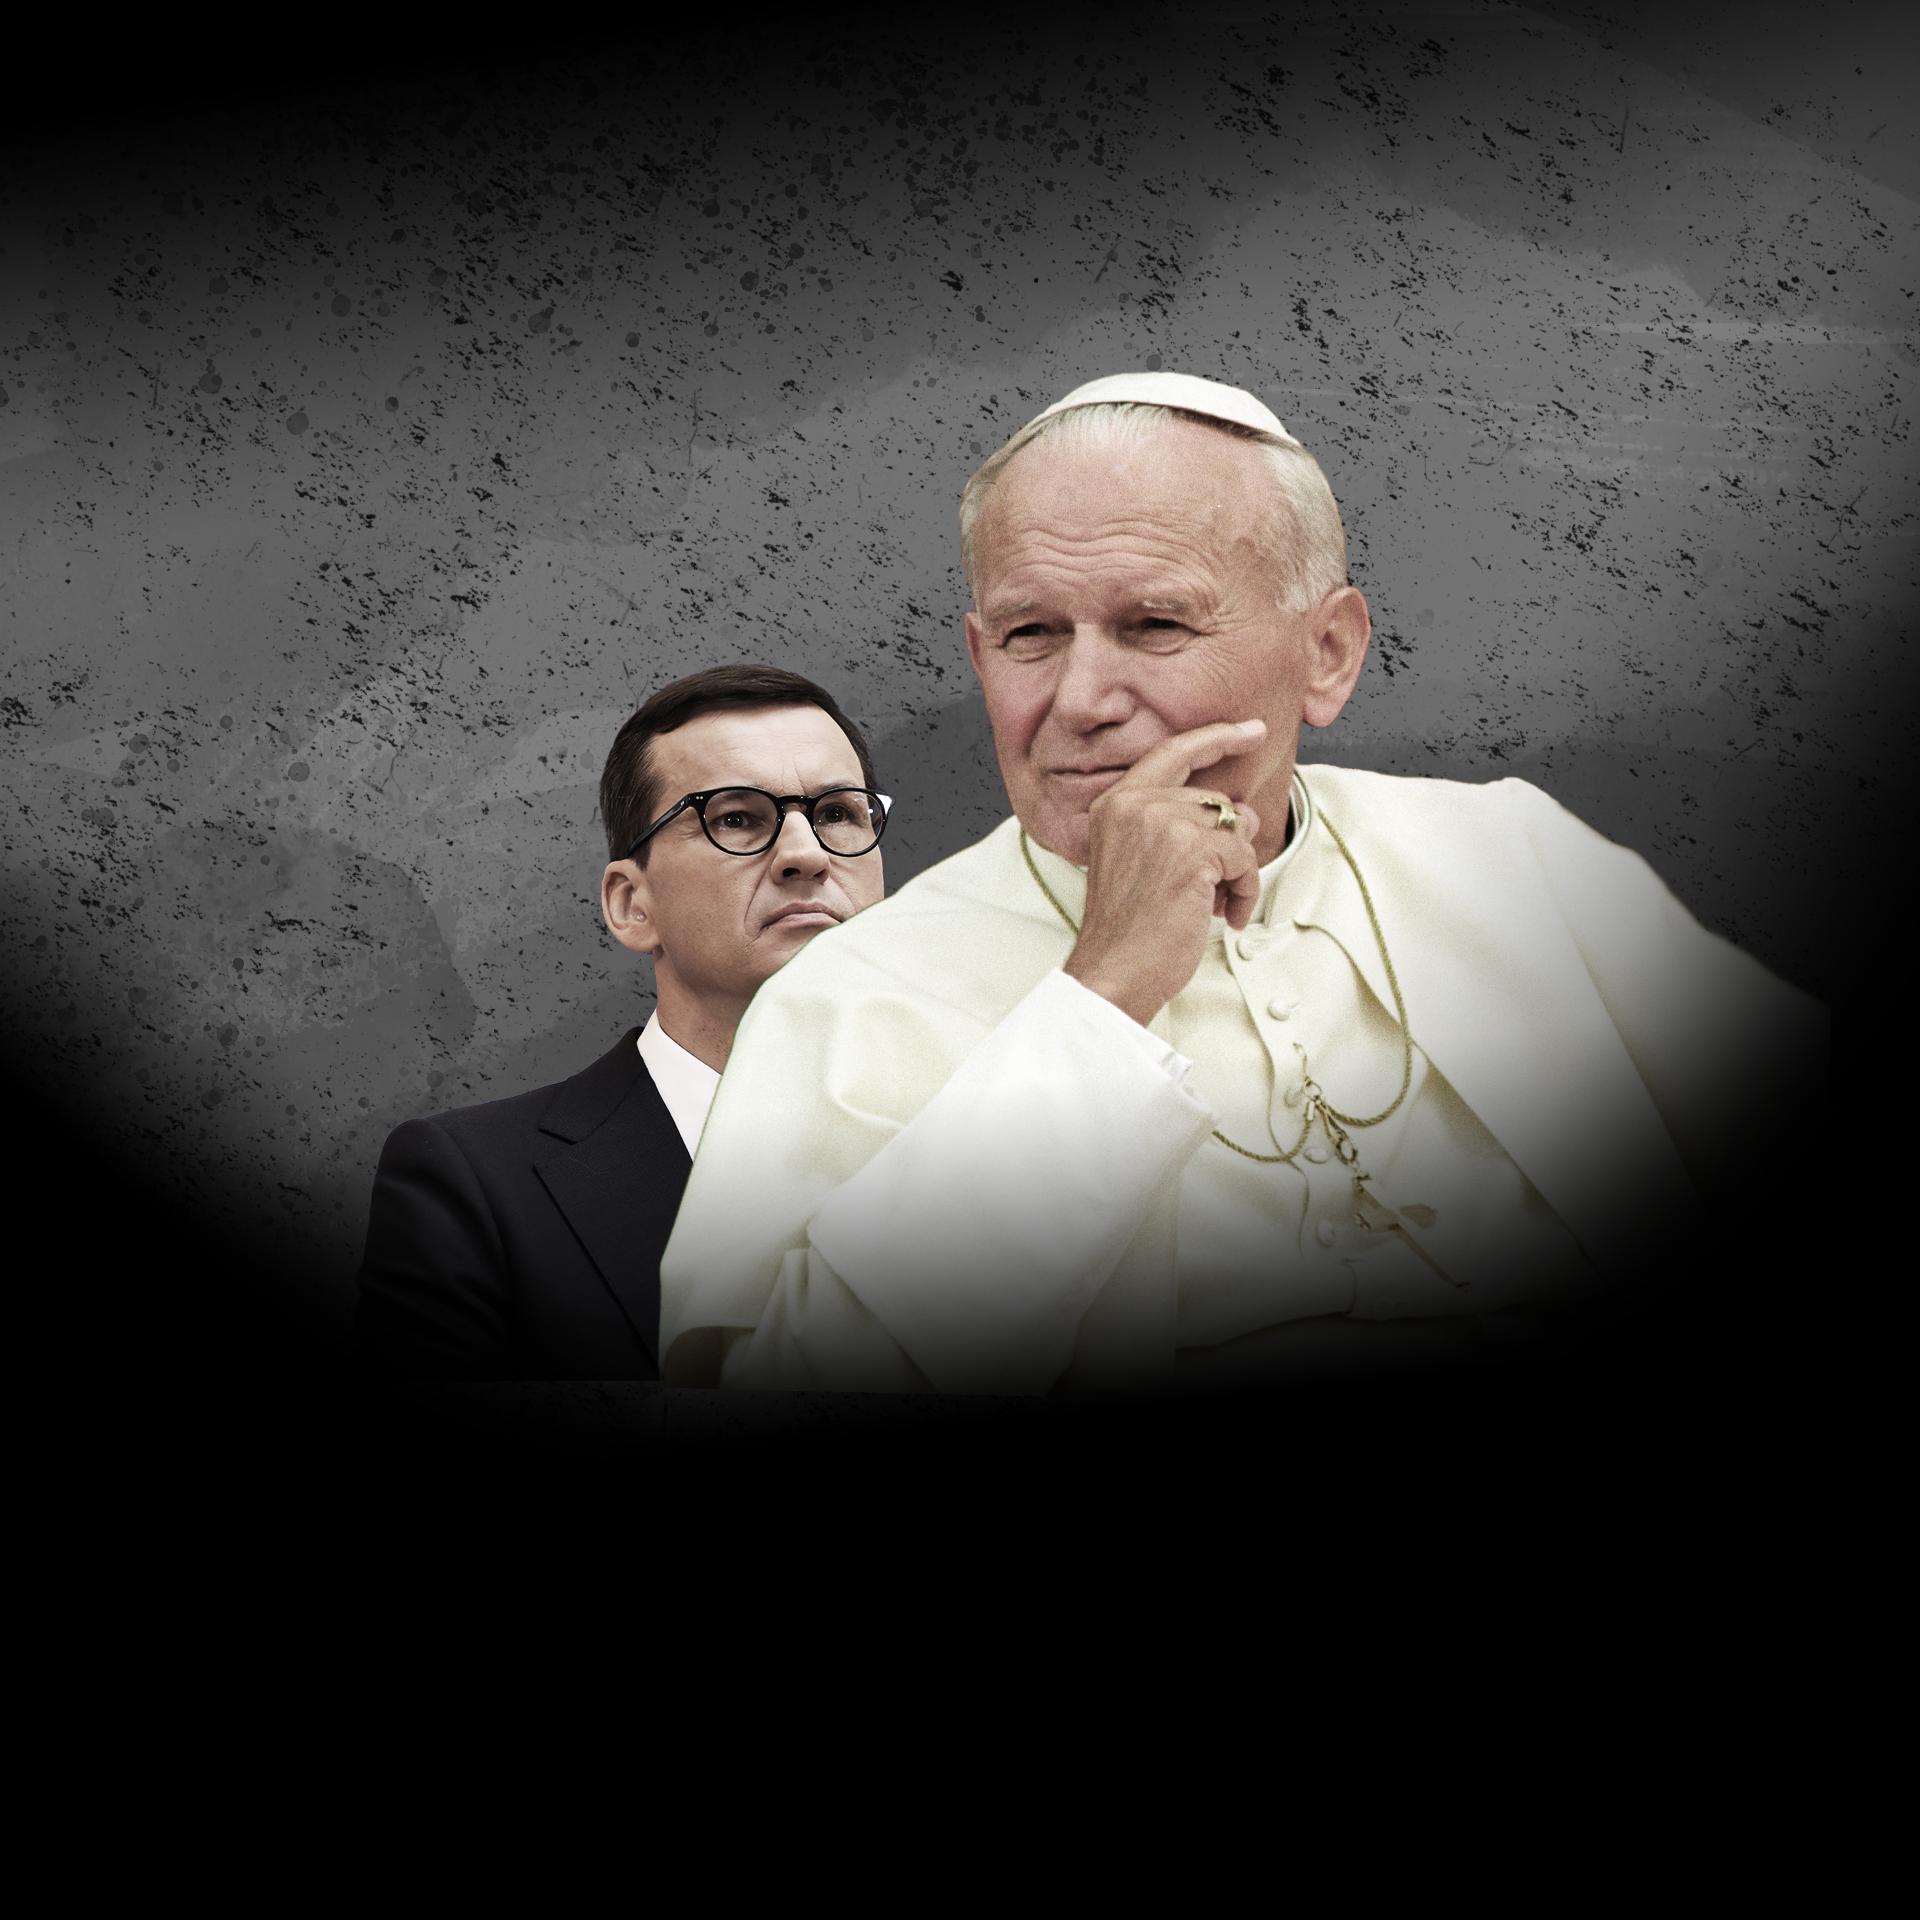 Fotomontaż przedstawiający Mateusza Morawieckiego, który wpatruje się ufnie w Jana Pawła II